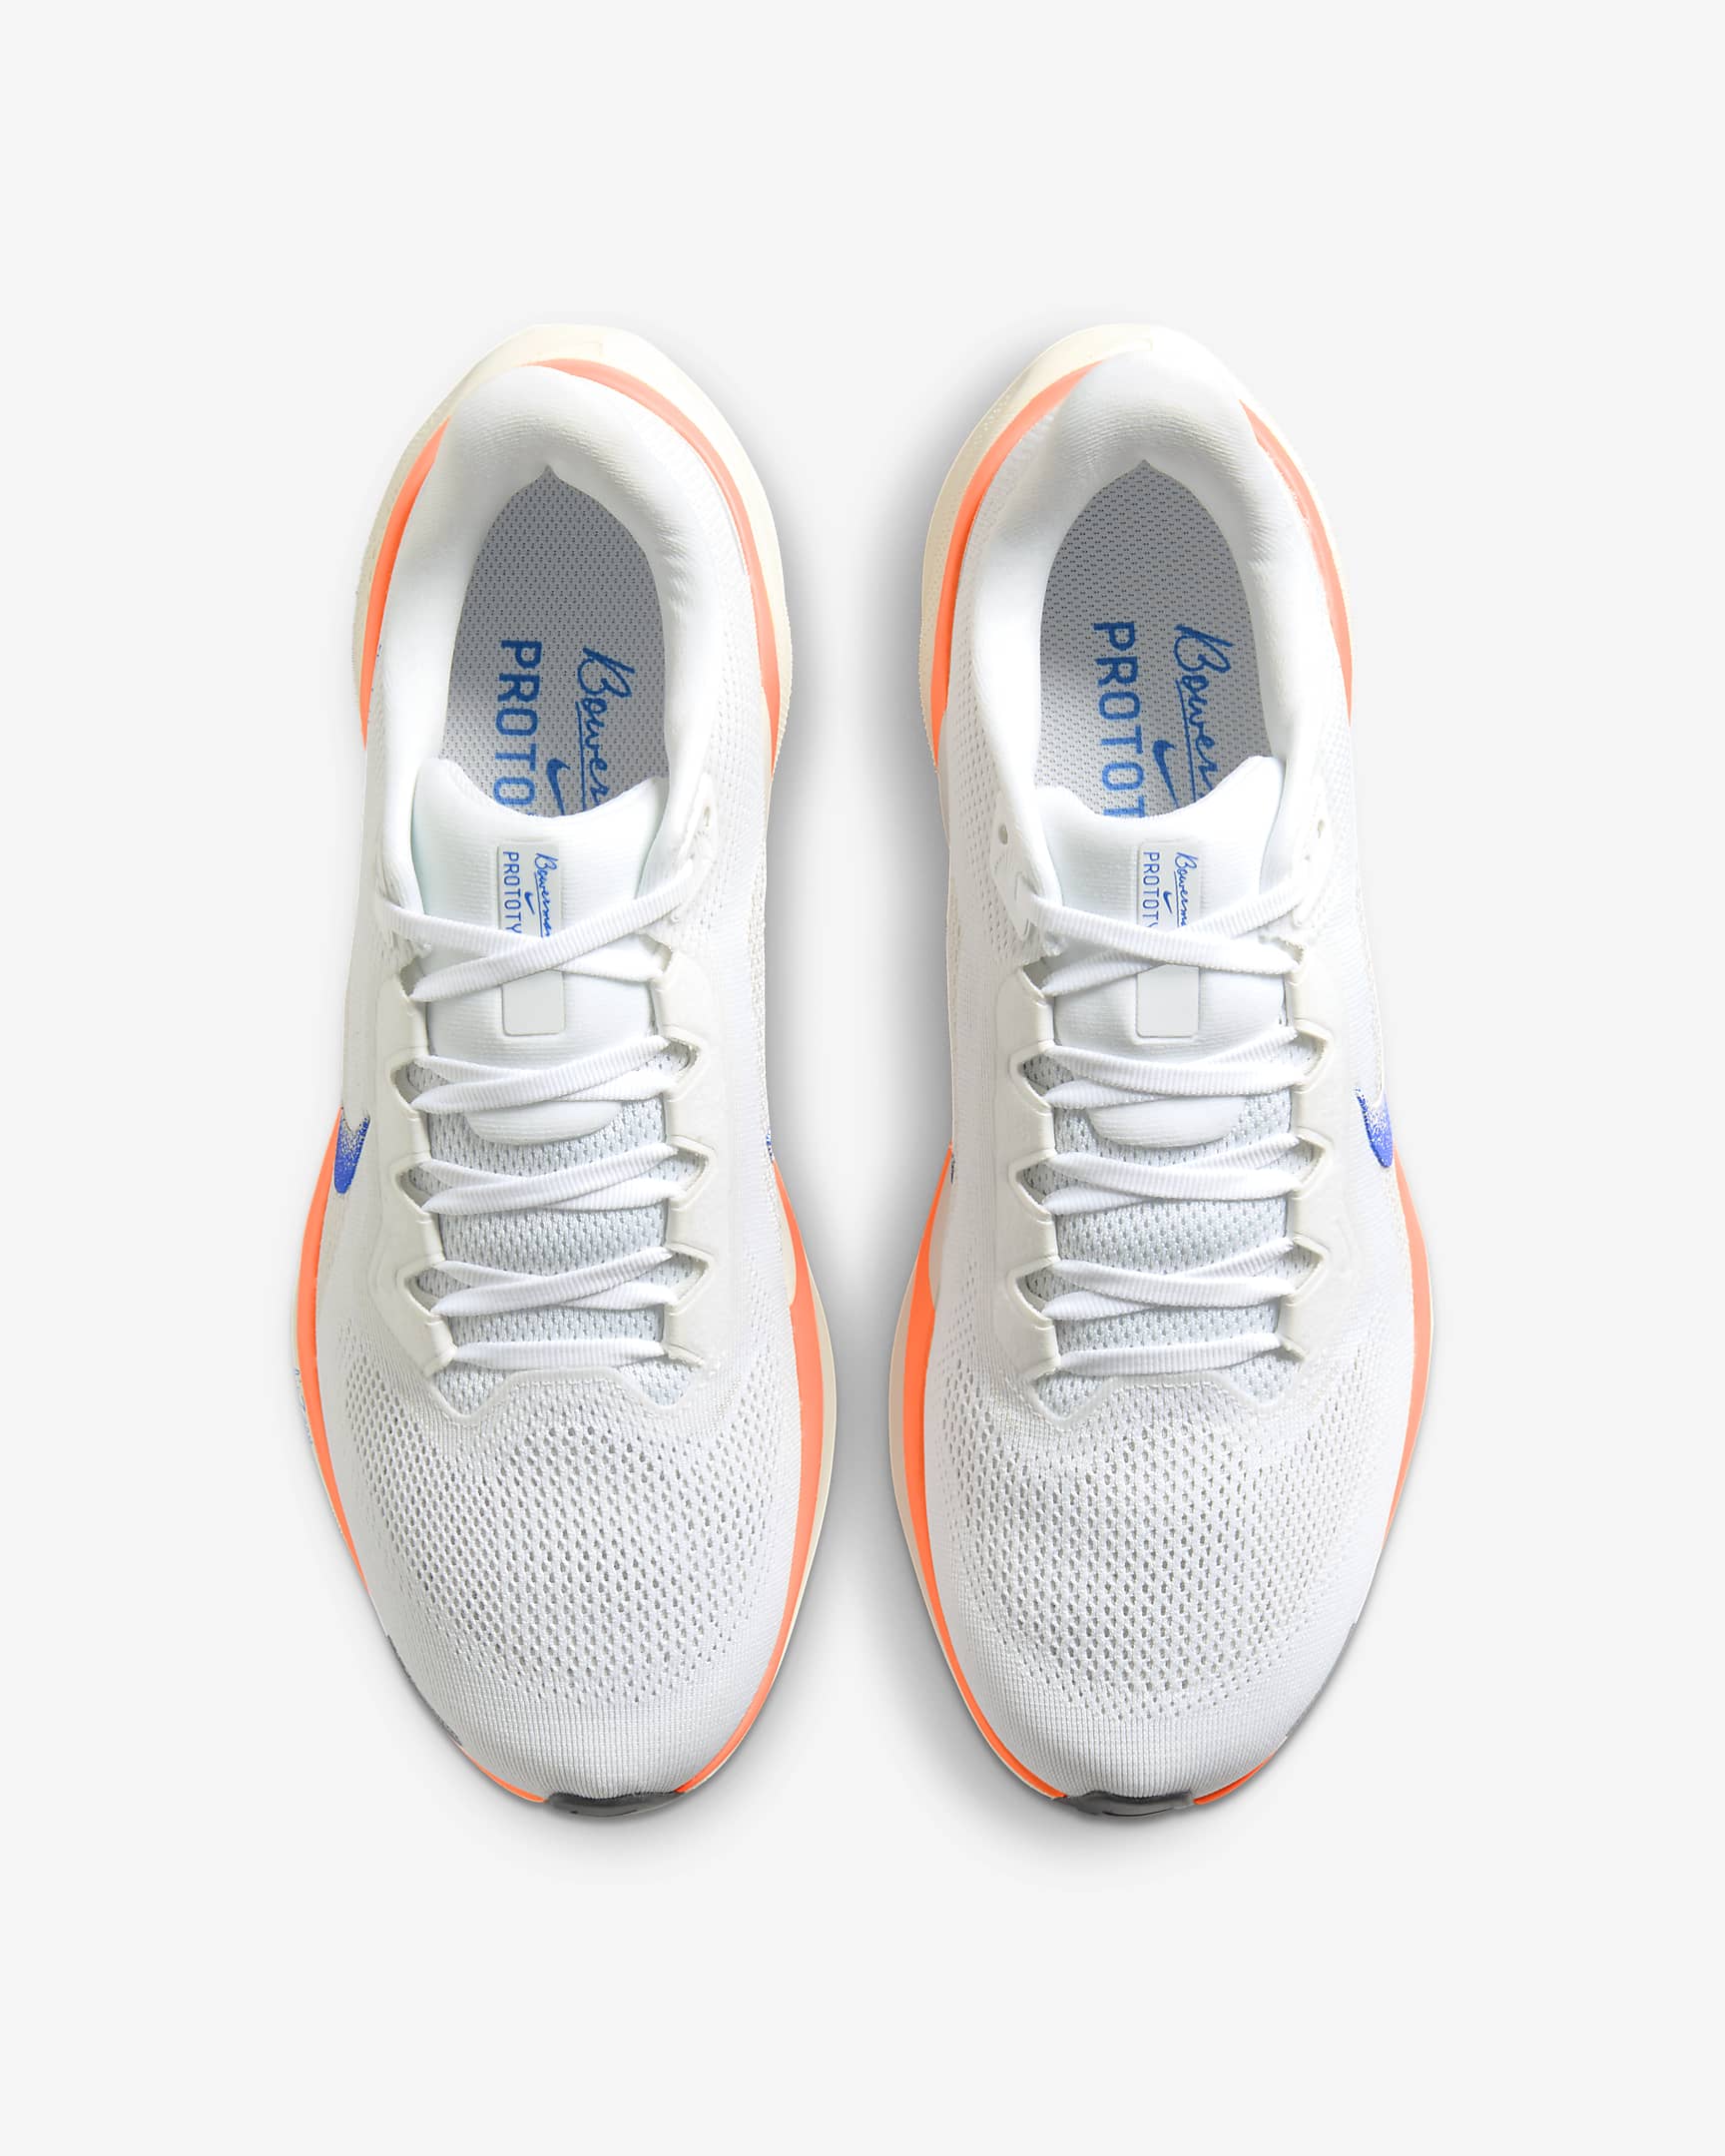 Nike Pegasus 41 Blueprint Men's Road Running Shoes - Multi-Colour/Multi-Colour